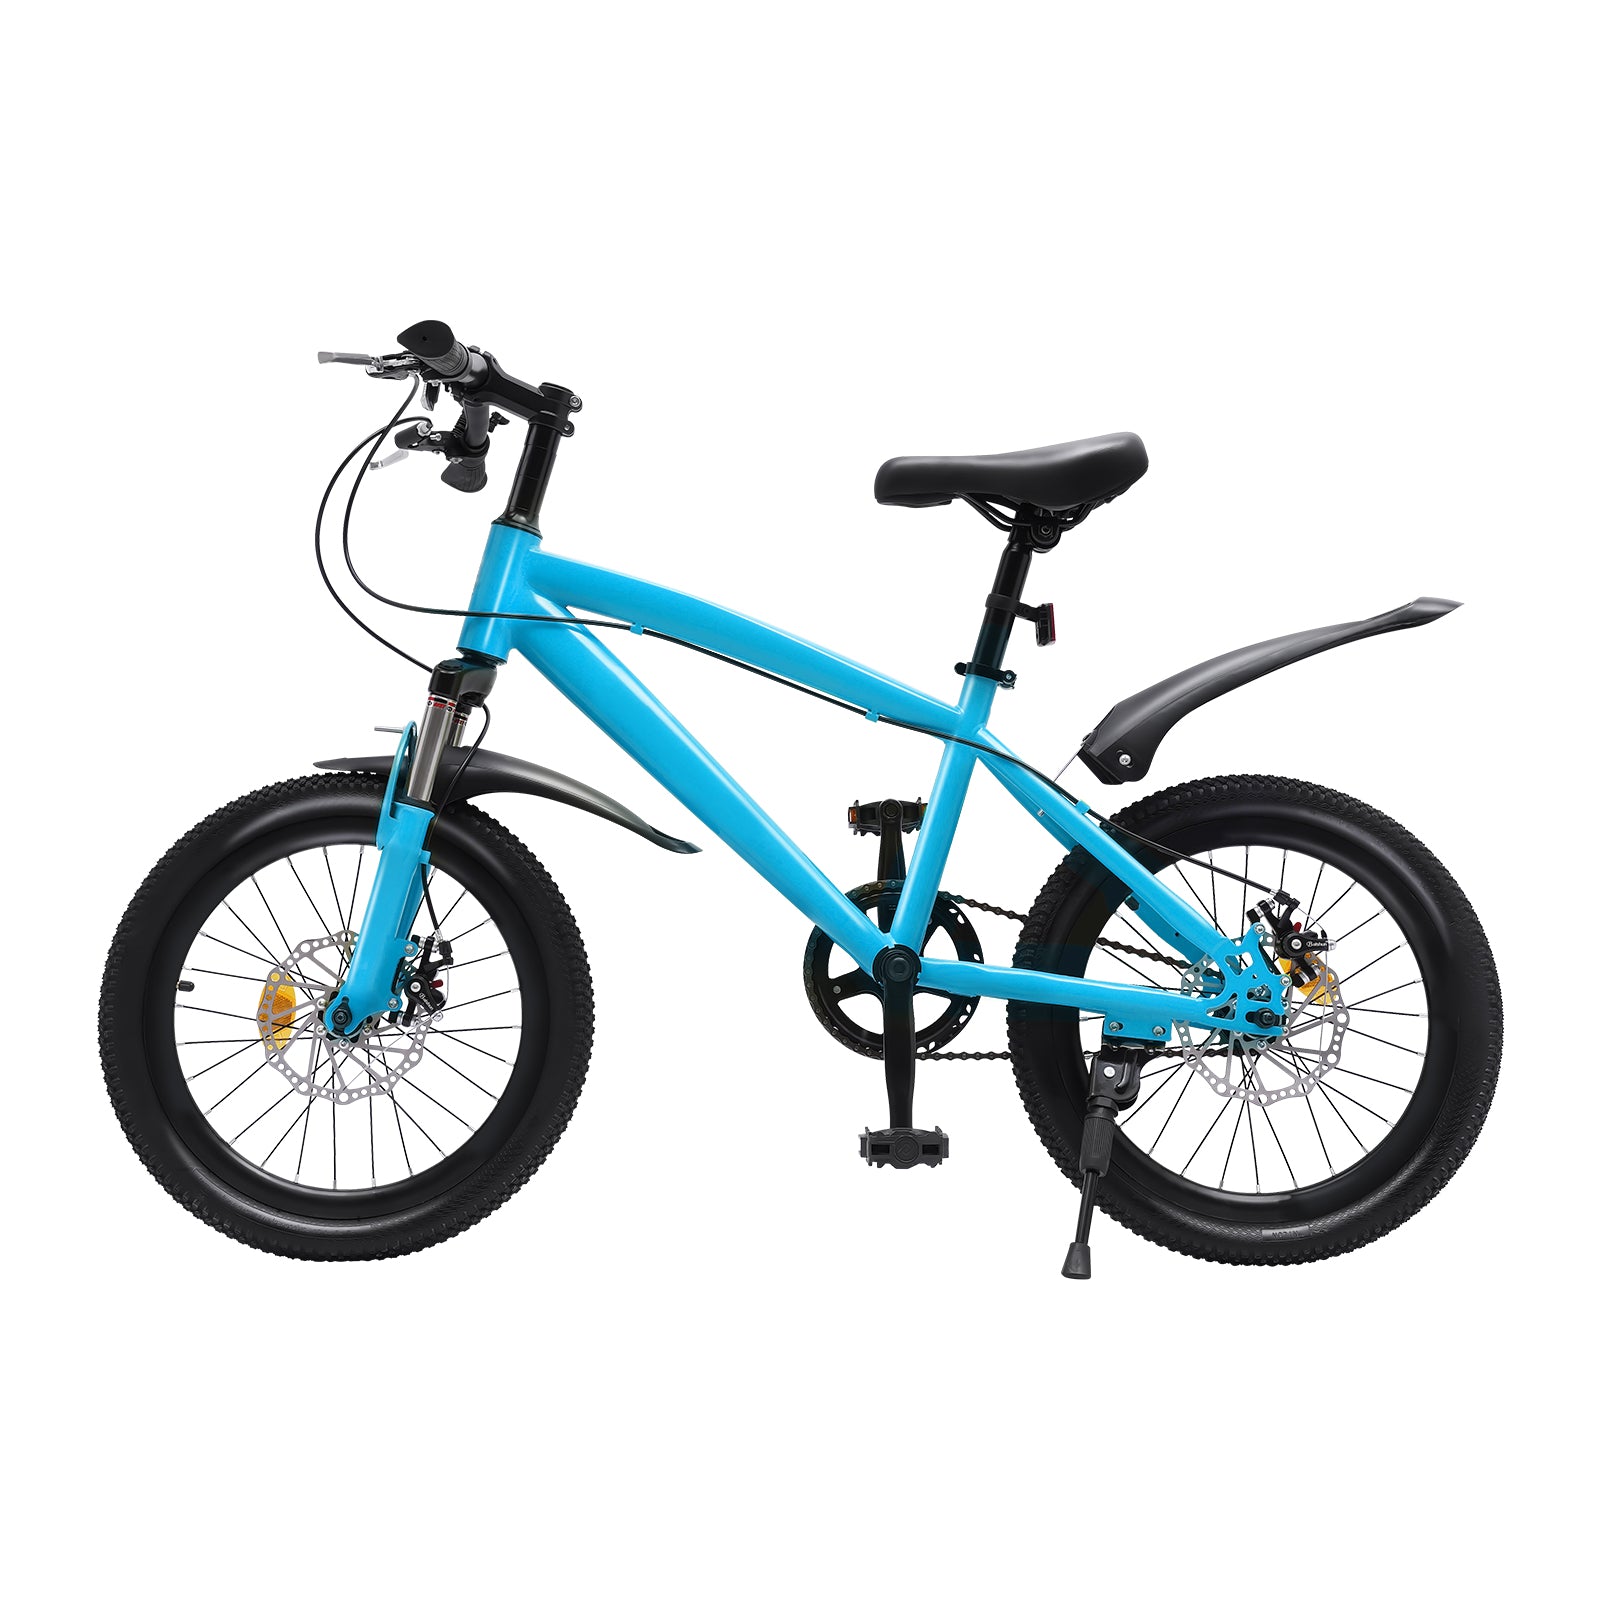 Mountain bike per bambini da 18", sedile regolabile, stile libero, per ragazzi e ragazze, blu